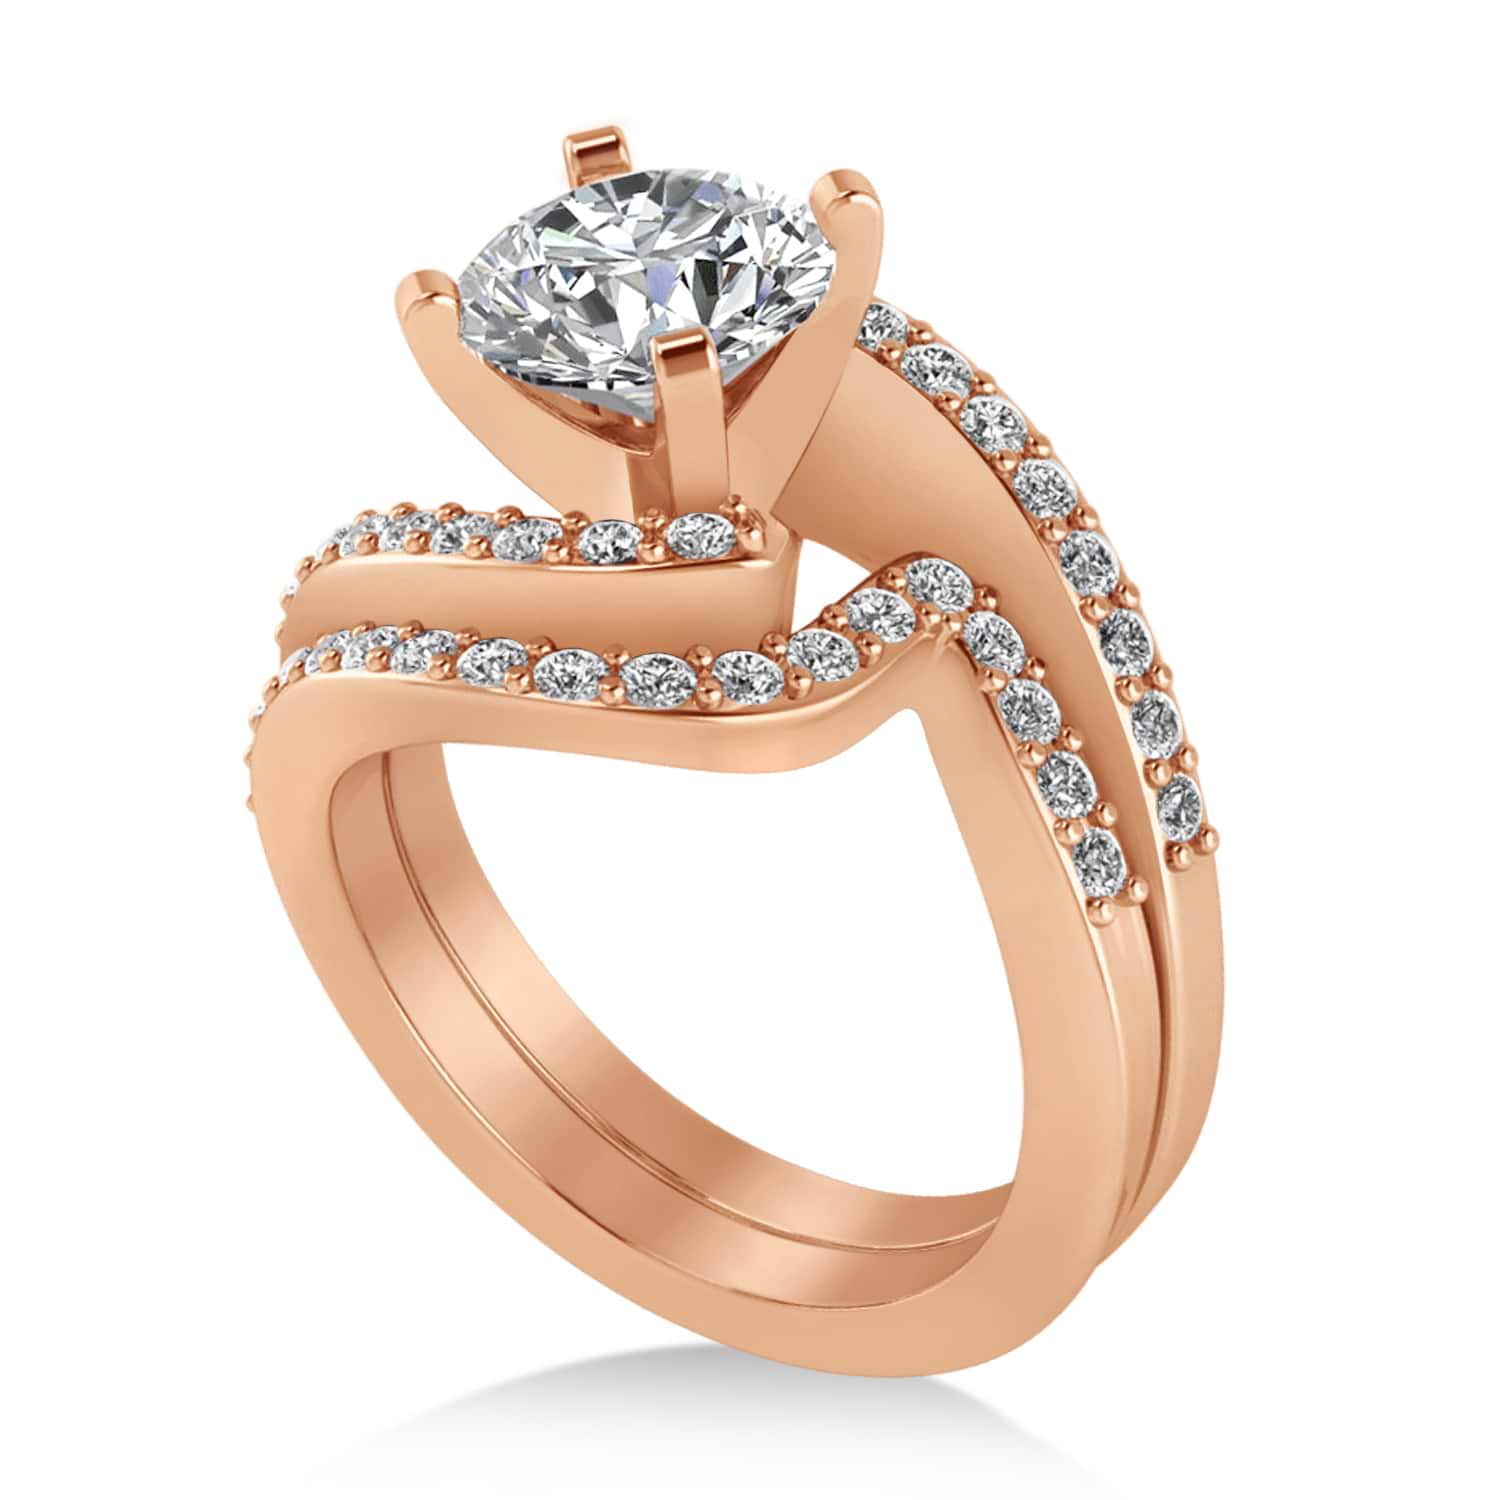 Lab Grown Diamond Accented Tension Set Bridal Set 18k Rose Gold (0.35ct)